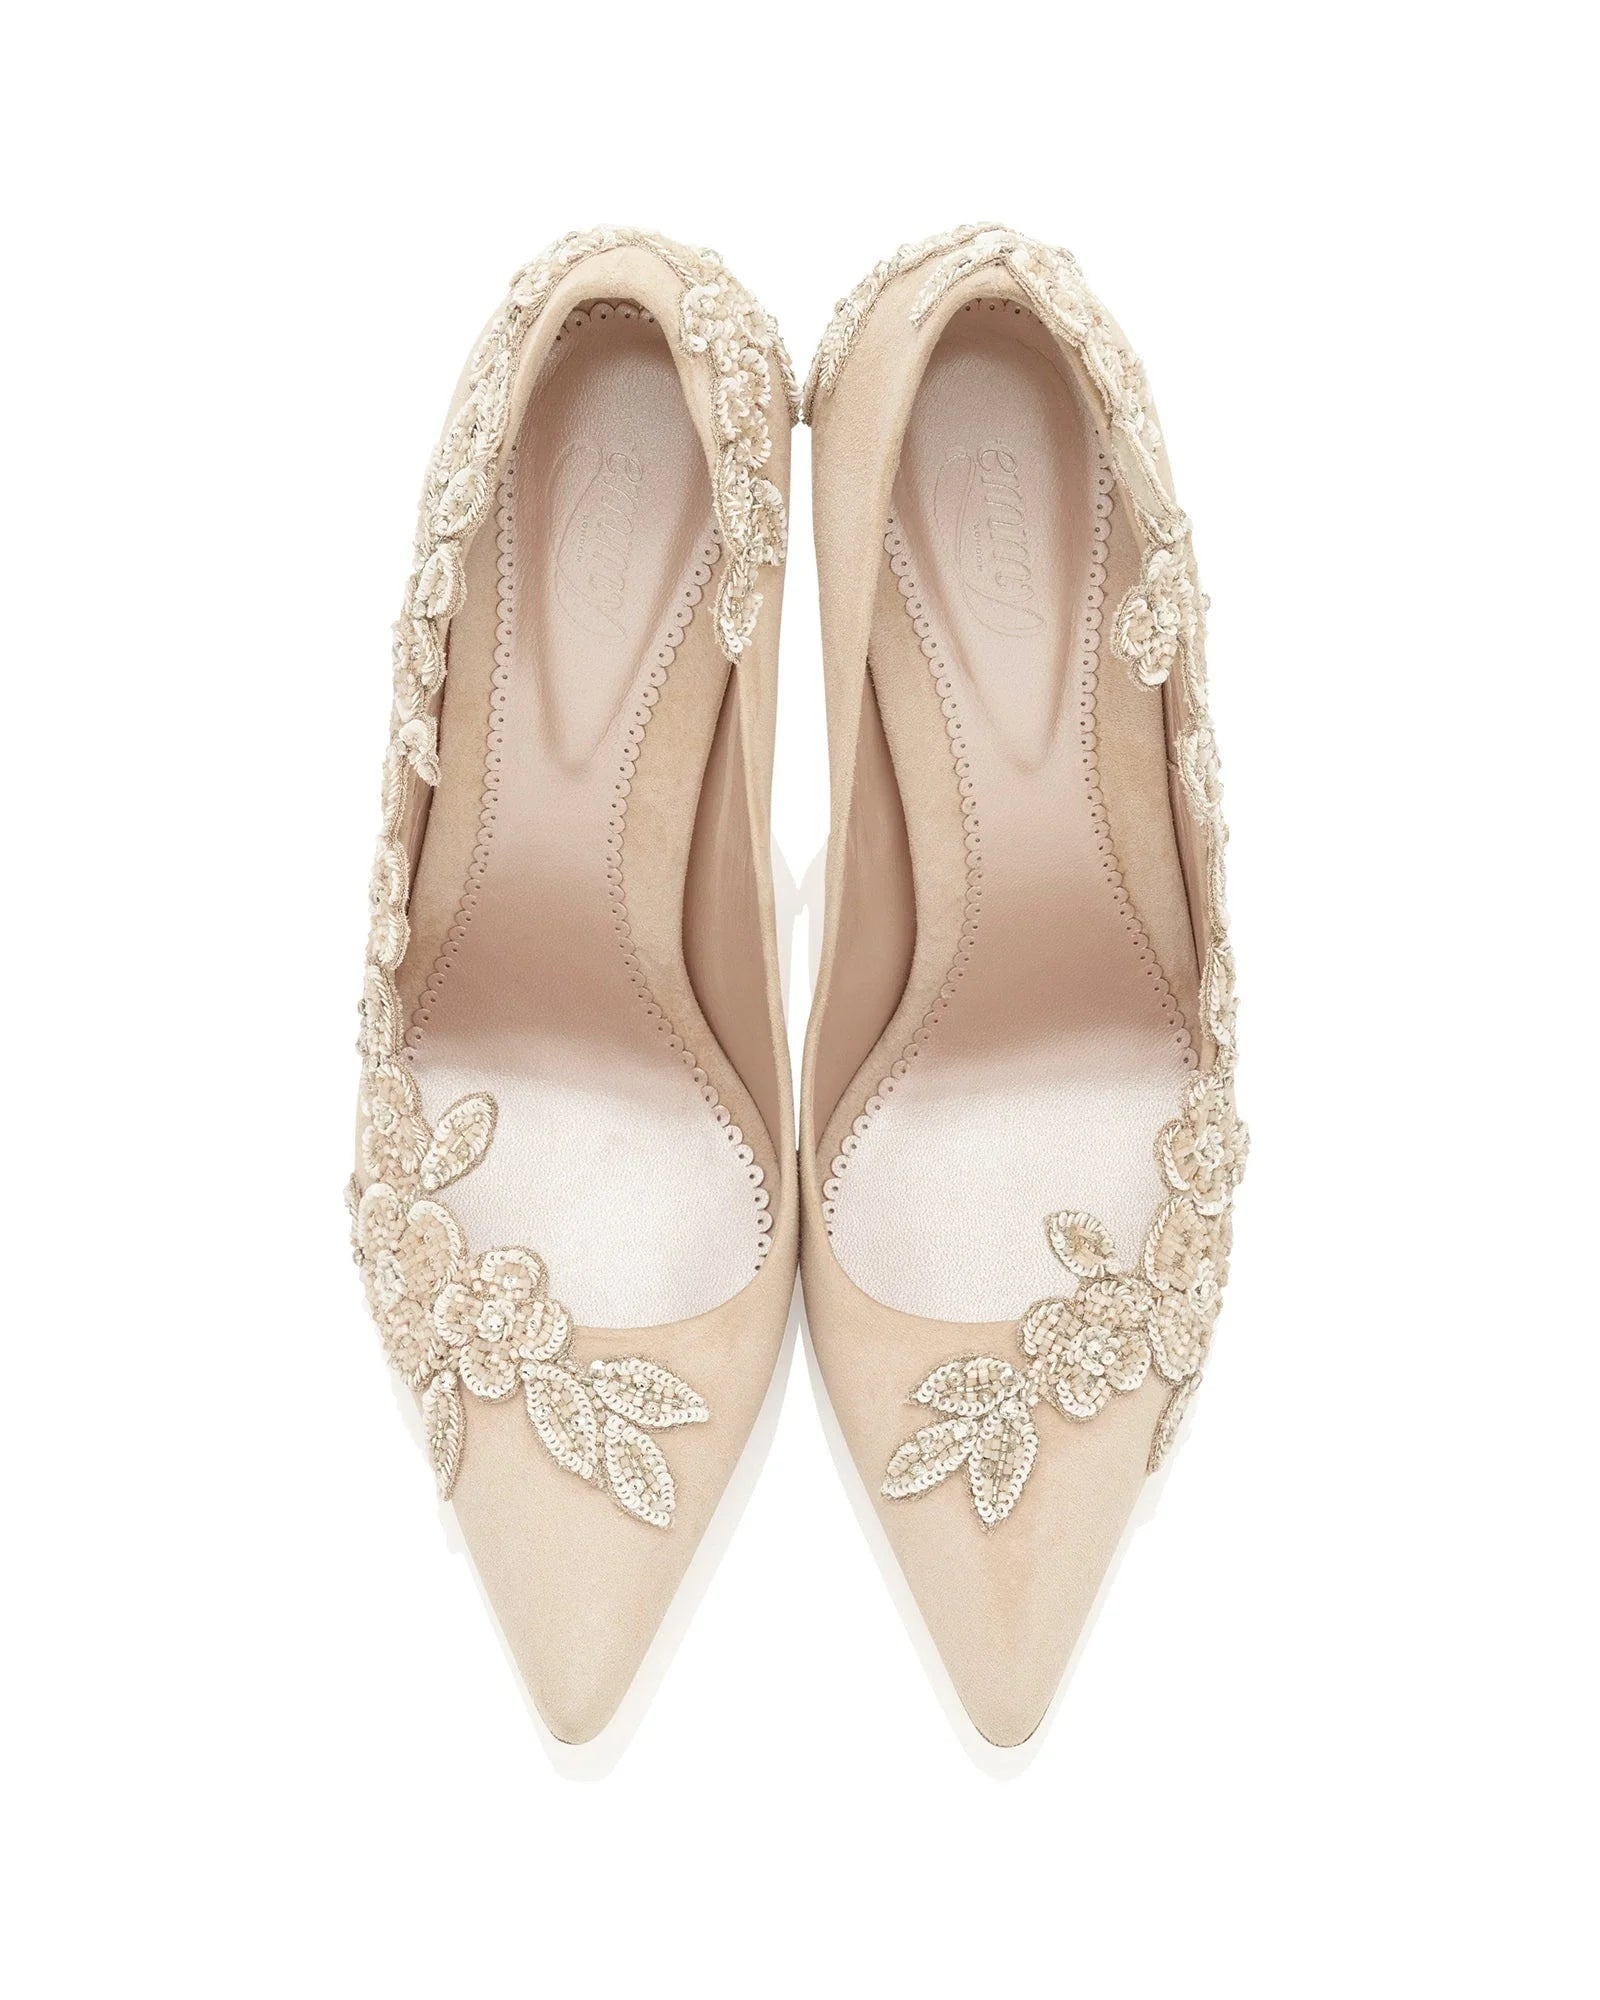 Isadora Mid Heel Bridal Shoe Floral Embellished Nude Shoes  image